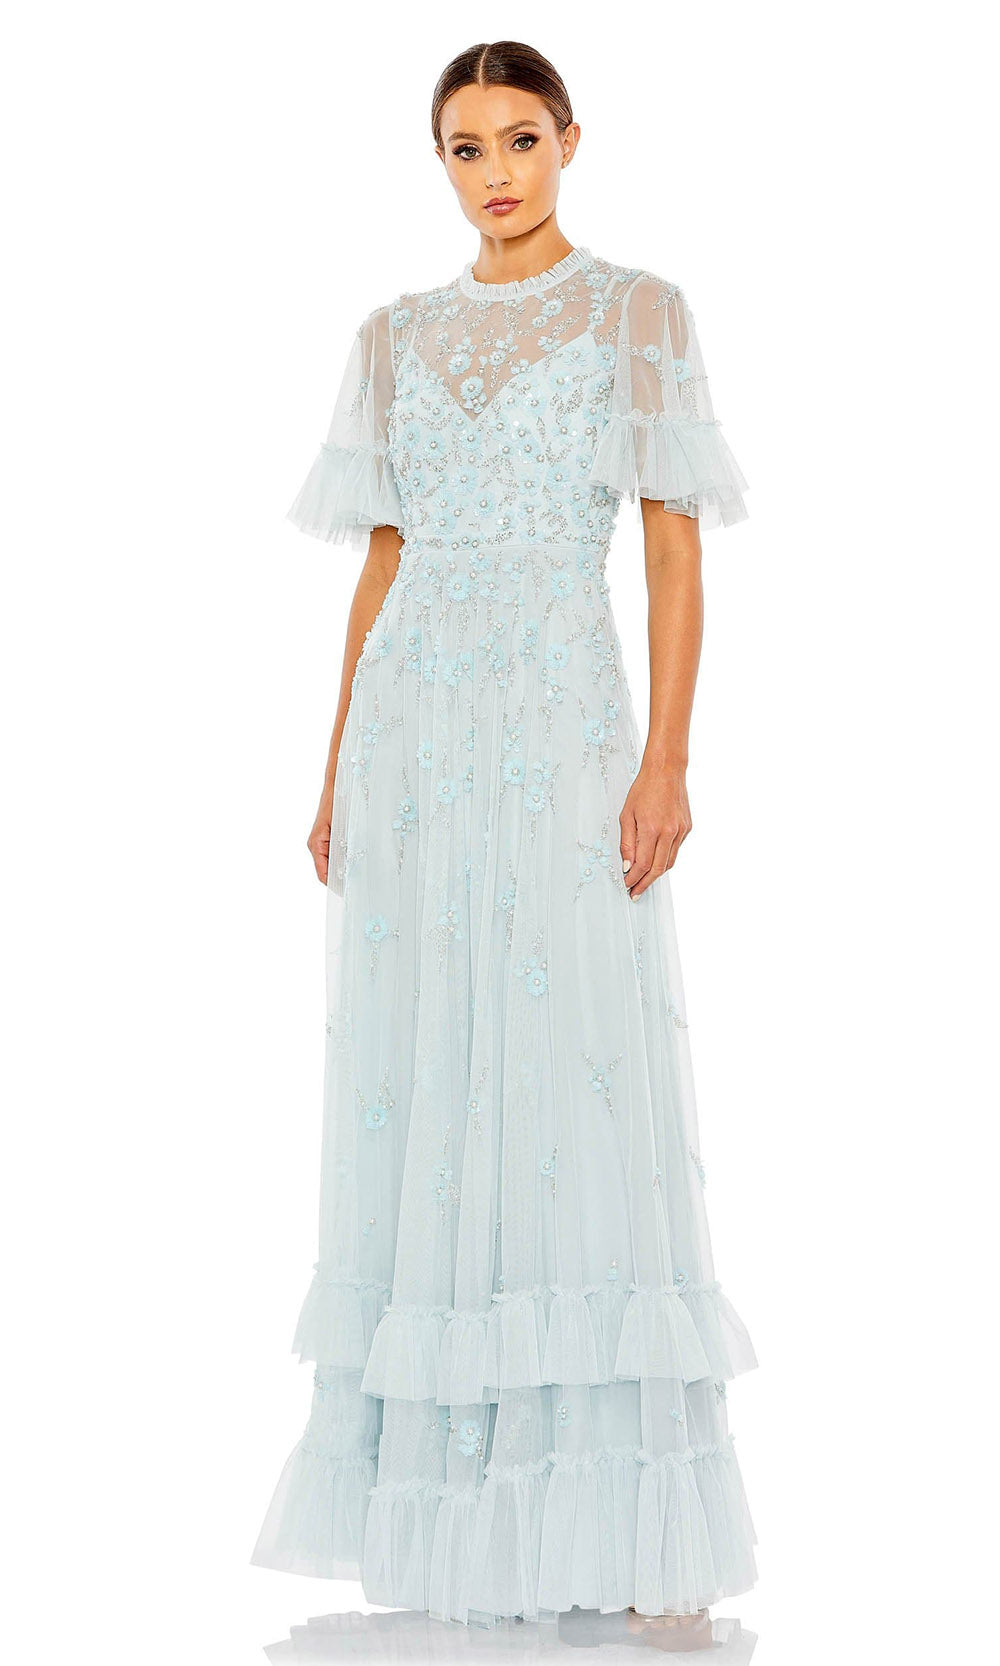 Mac Duggal - 9199 Ruffled Jewel Neck Embellished Dress In Blue